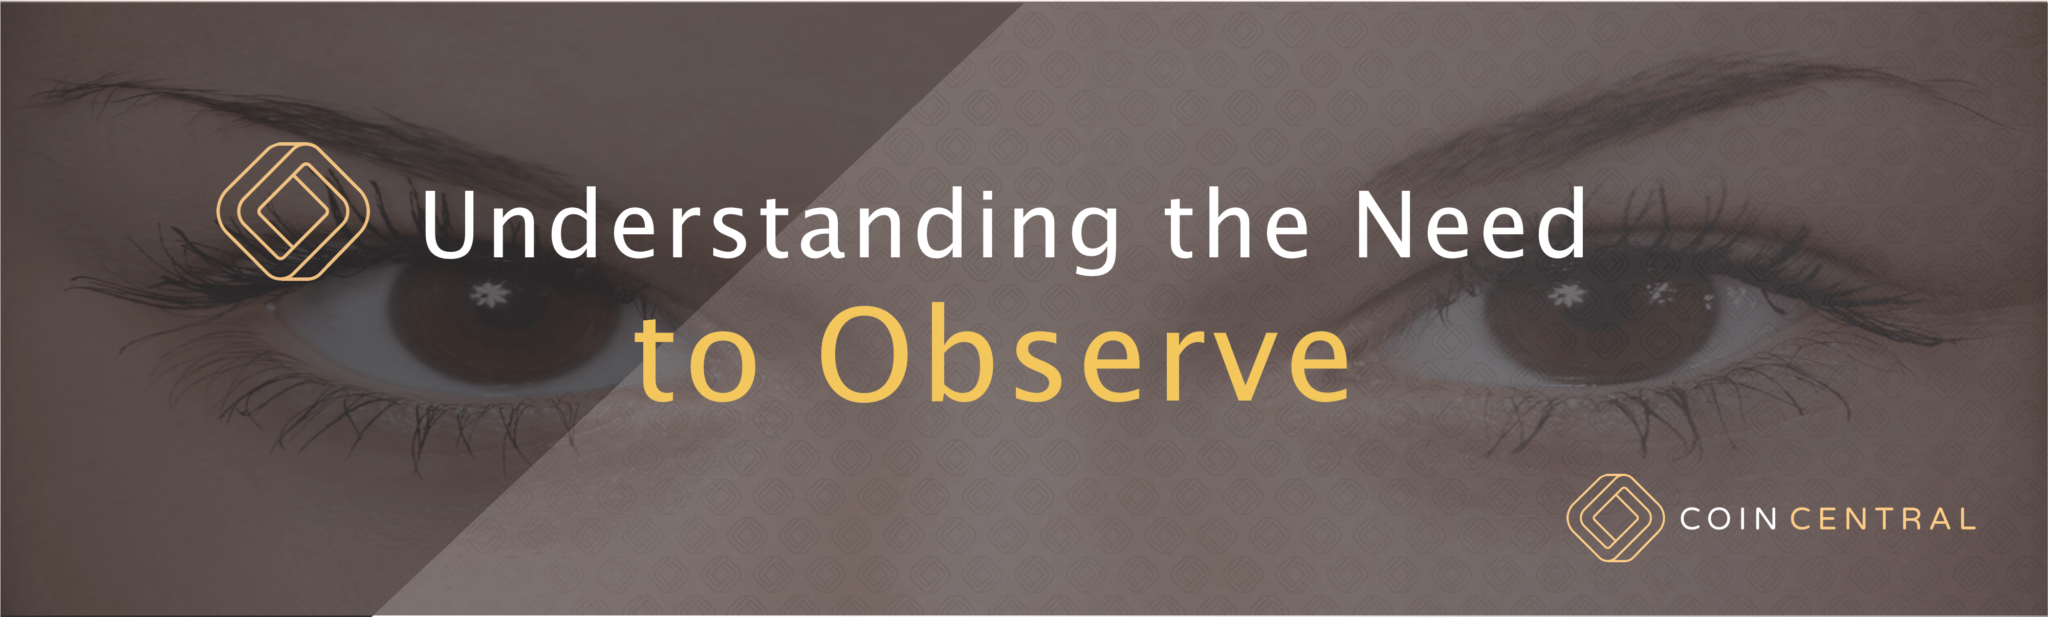 De noodzaak van observeren begrijpen